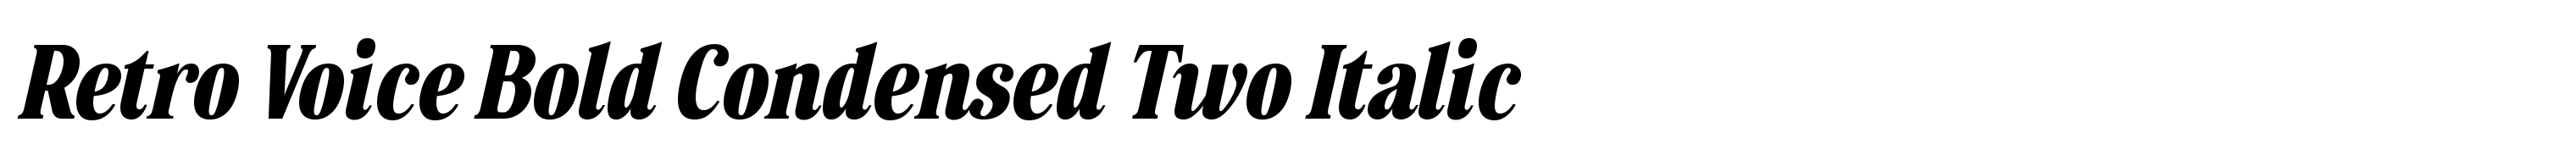 Retro Voice Bold Condensed Two Italic